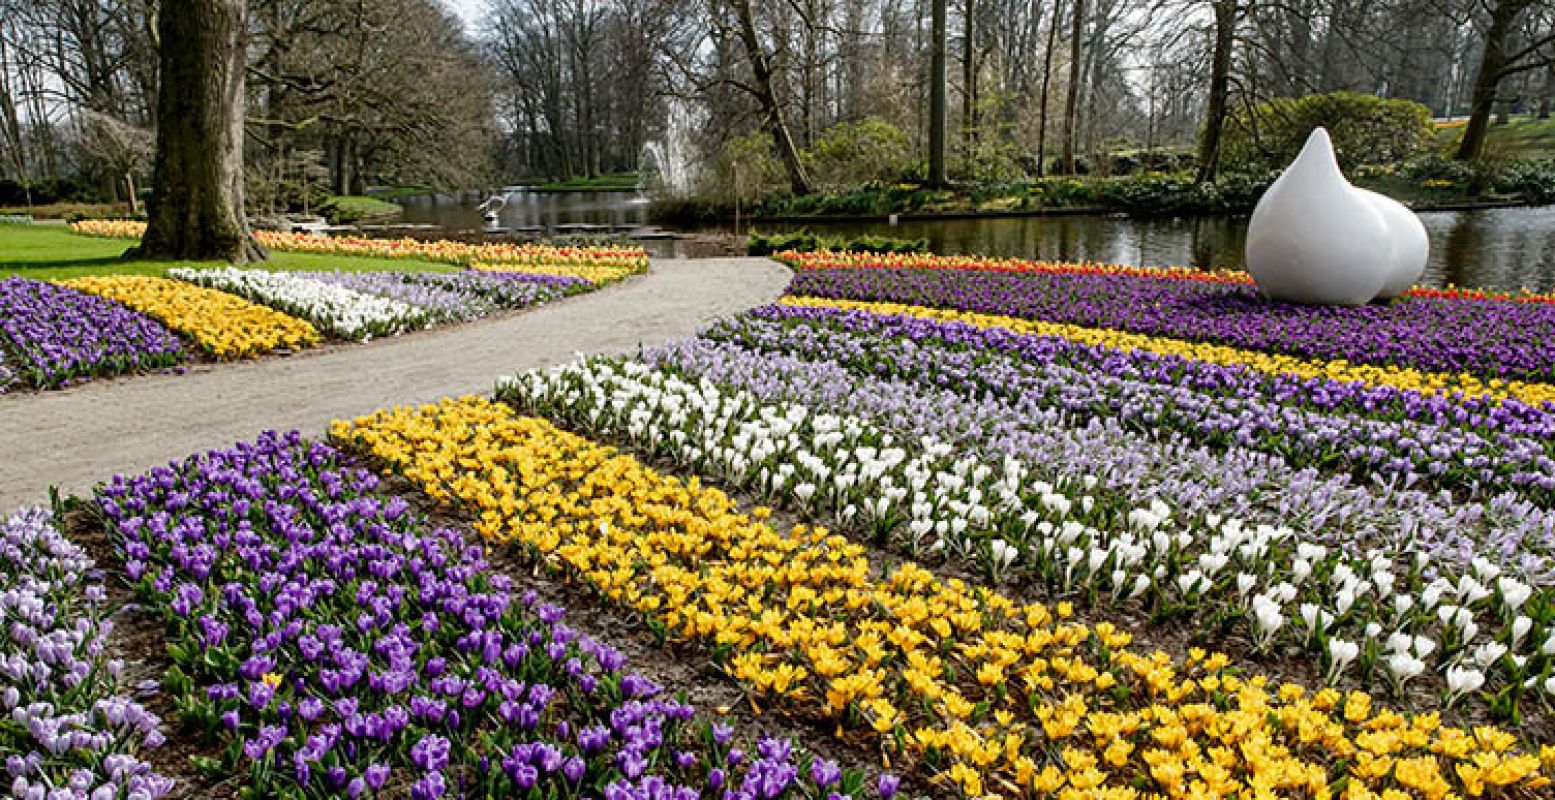 Vier de lente tussen prachtige bloemenvelden in de Gouden Eeuw inspiratietuin en de Delfts blauwe tuin. Foto: Keukenhof.